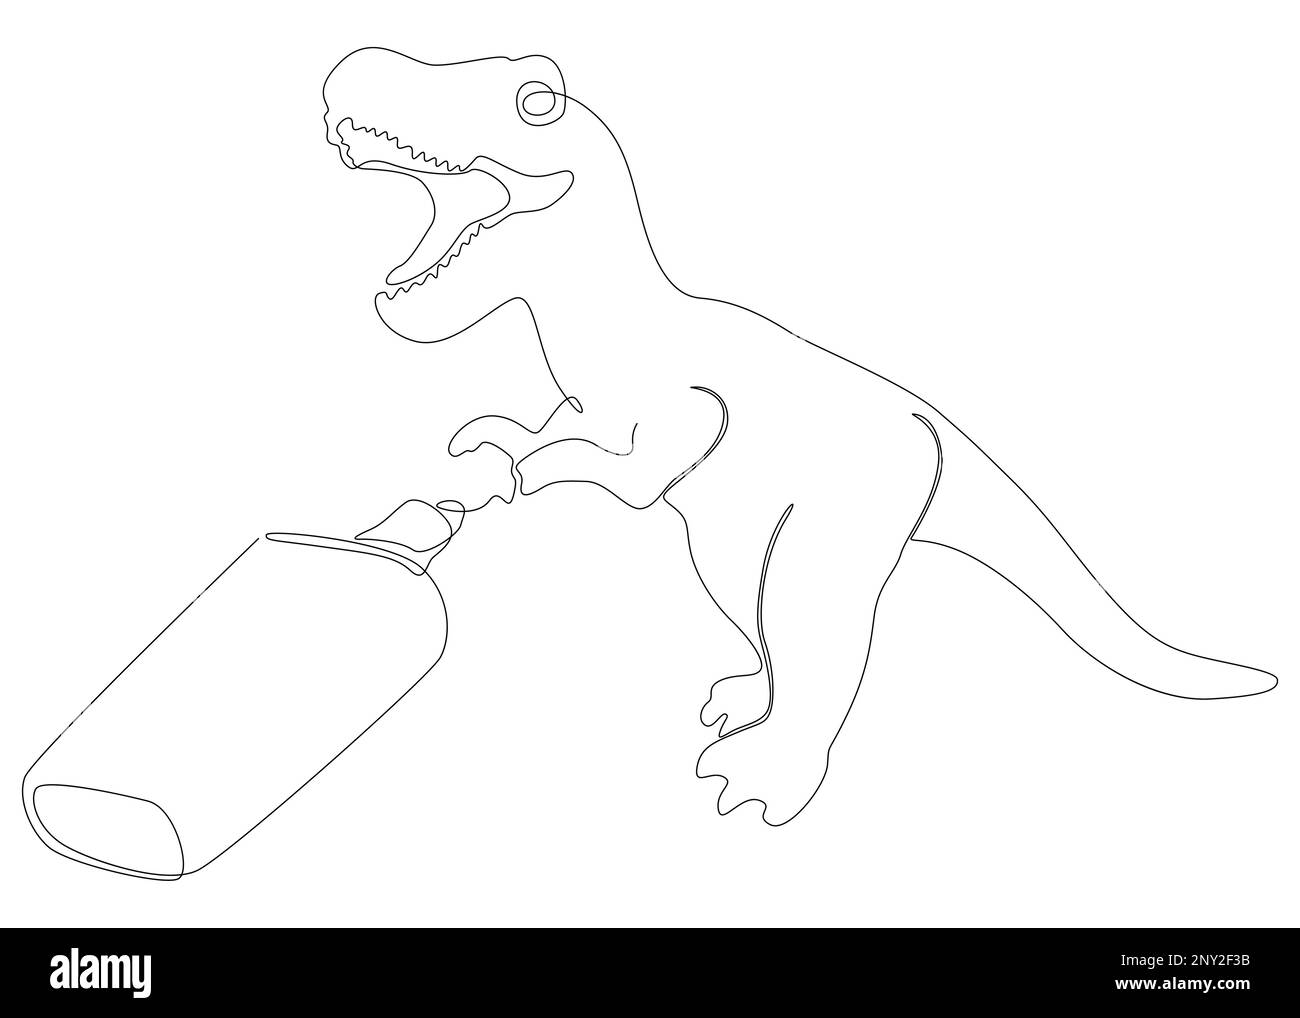 Eine durchgehende Linie Tyrannosaurus Rex, gezeichnet mit einem Bleistift und Filzstift. Vektorkonzept zur Darstellung dünner Linien. Kontur Zeichnen kreativer Ideen. Stock Vektor